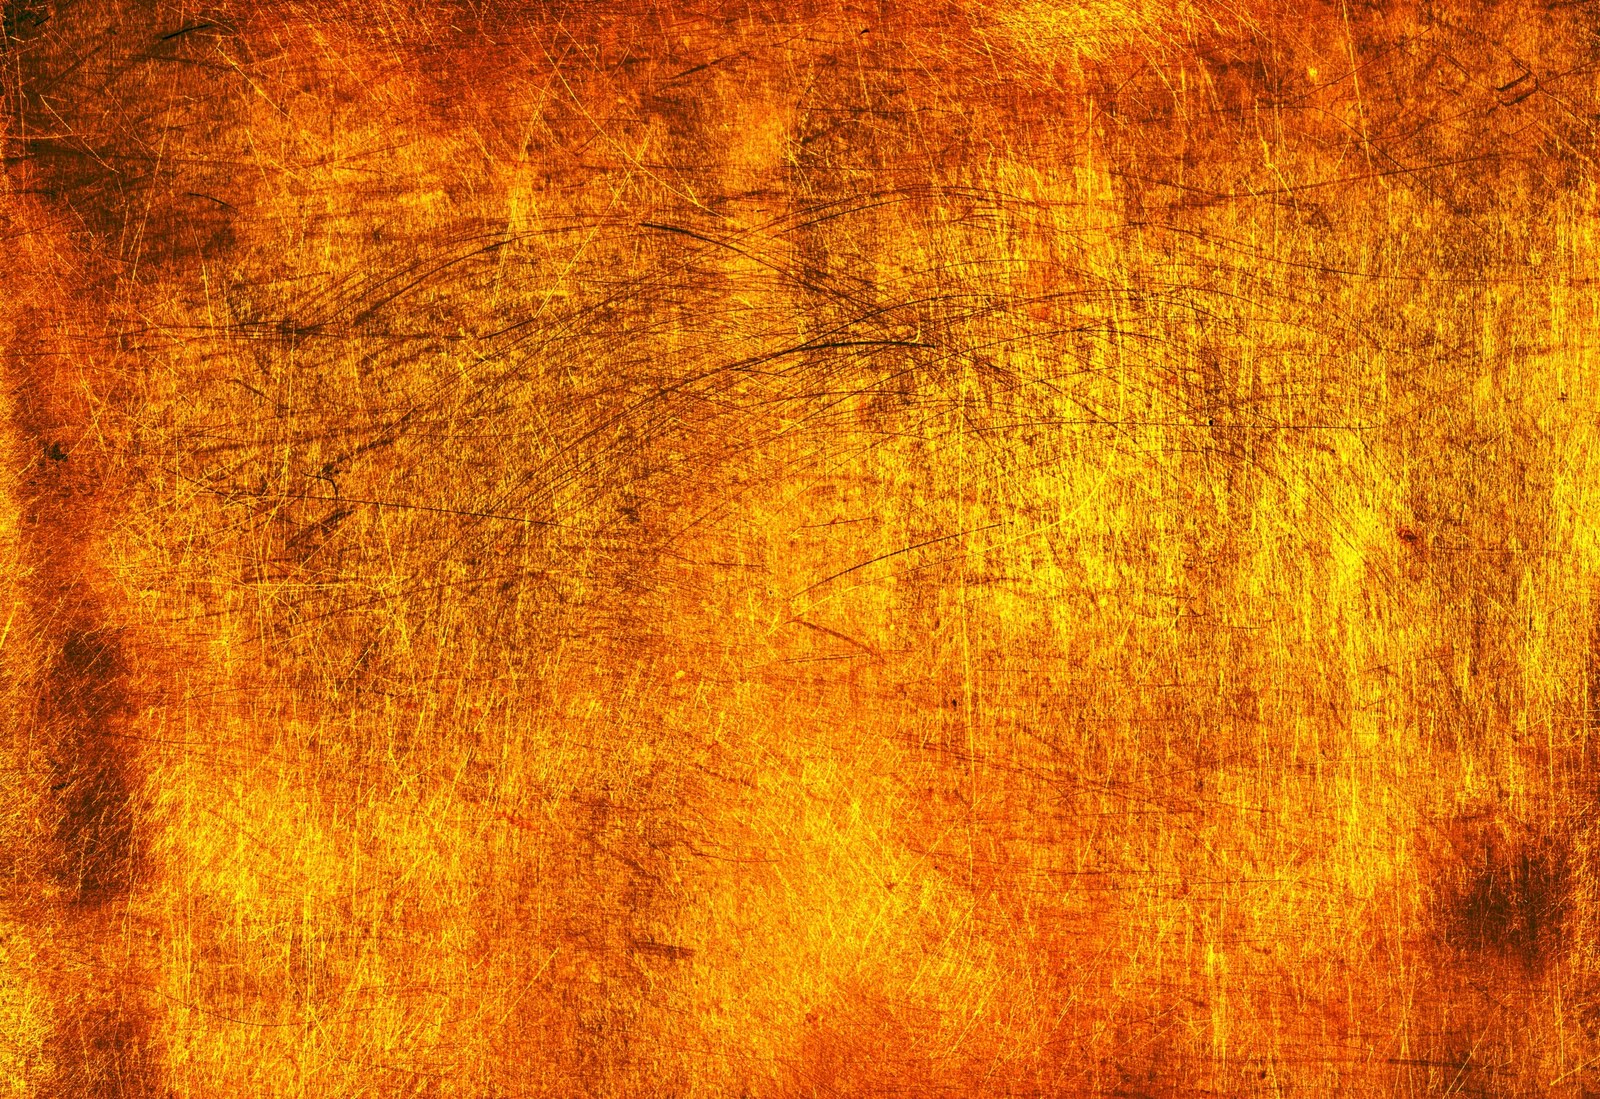 ゴールドのテクスチャ壁紙,オレンジ,黄,褐色,アンバー,木材